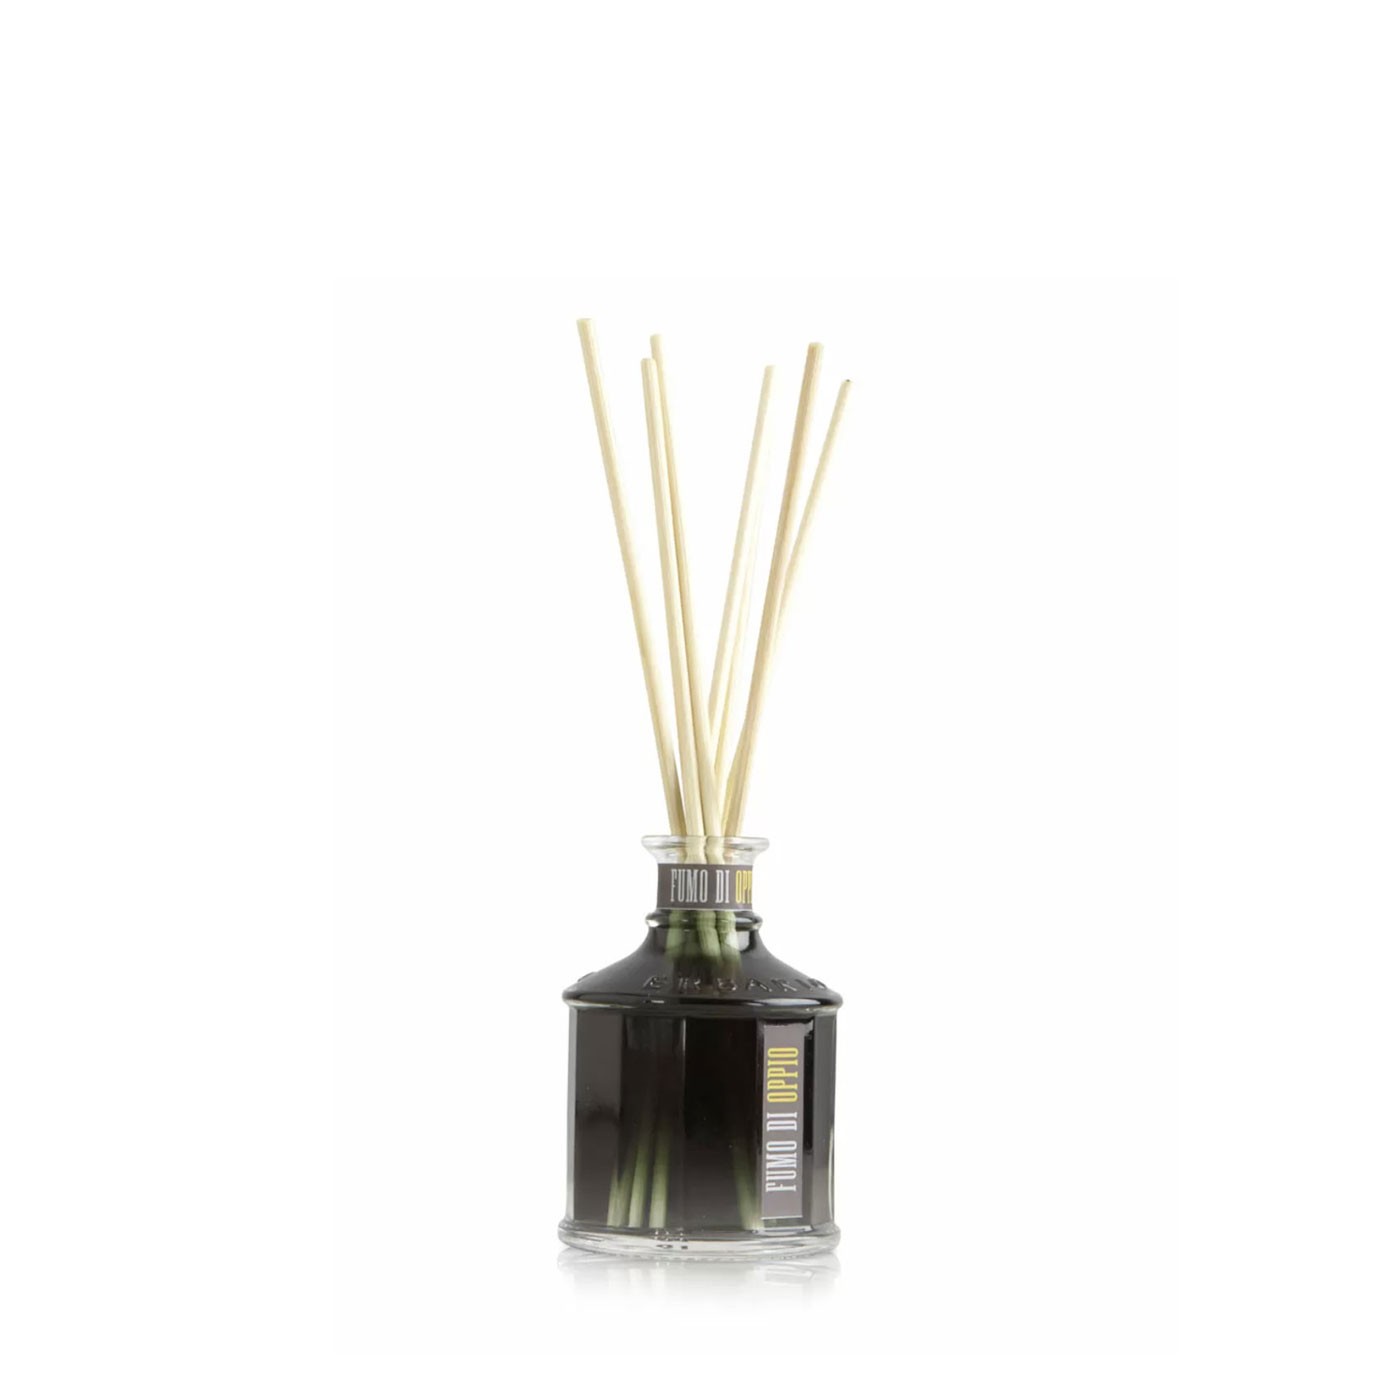 Fumo di Oppio Fragrance Diffuser 3.4 oz - Erbario Toscano | Eataly.com